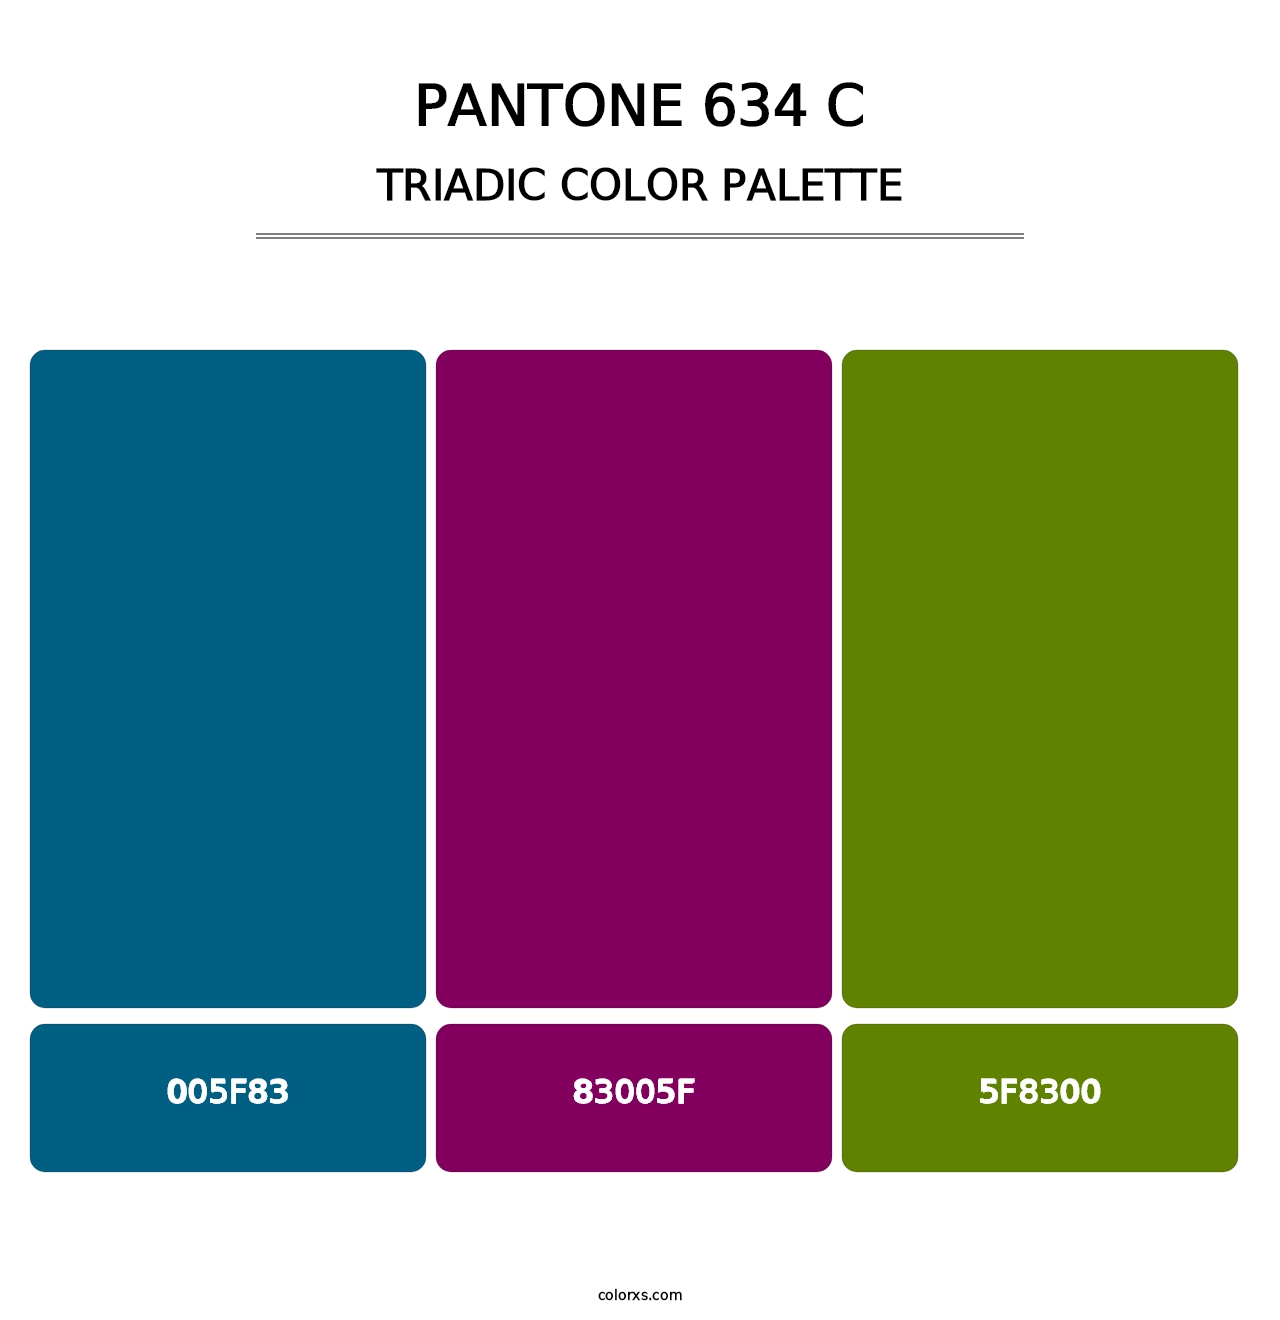 PANTONE 634 C - Triadic Color Palette